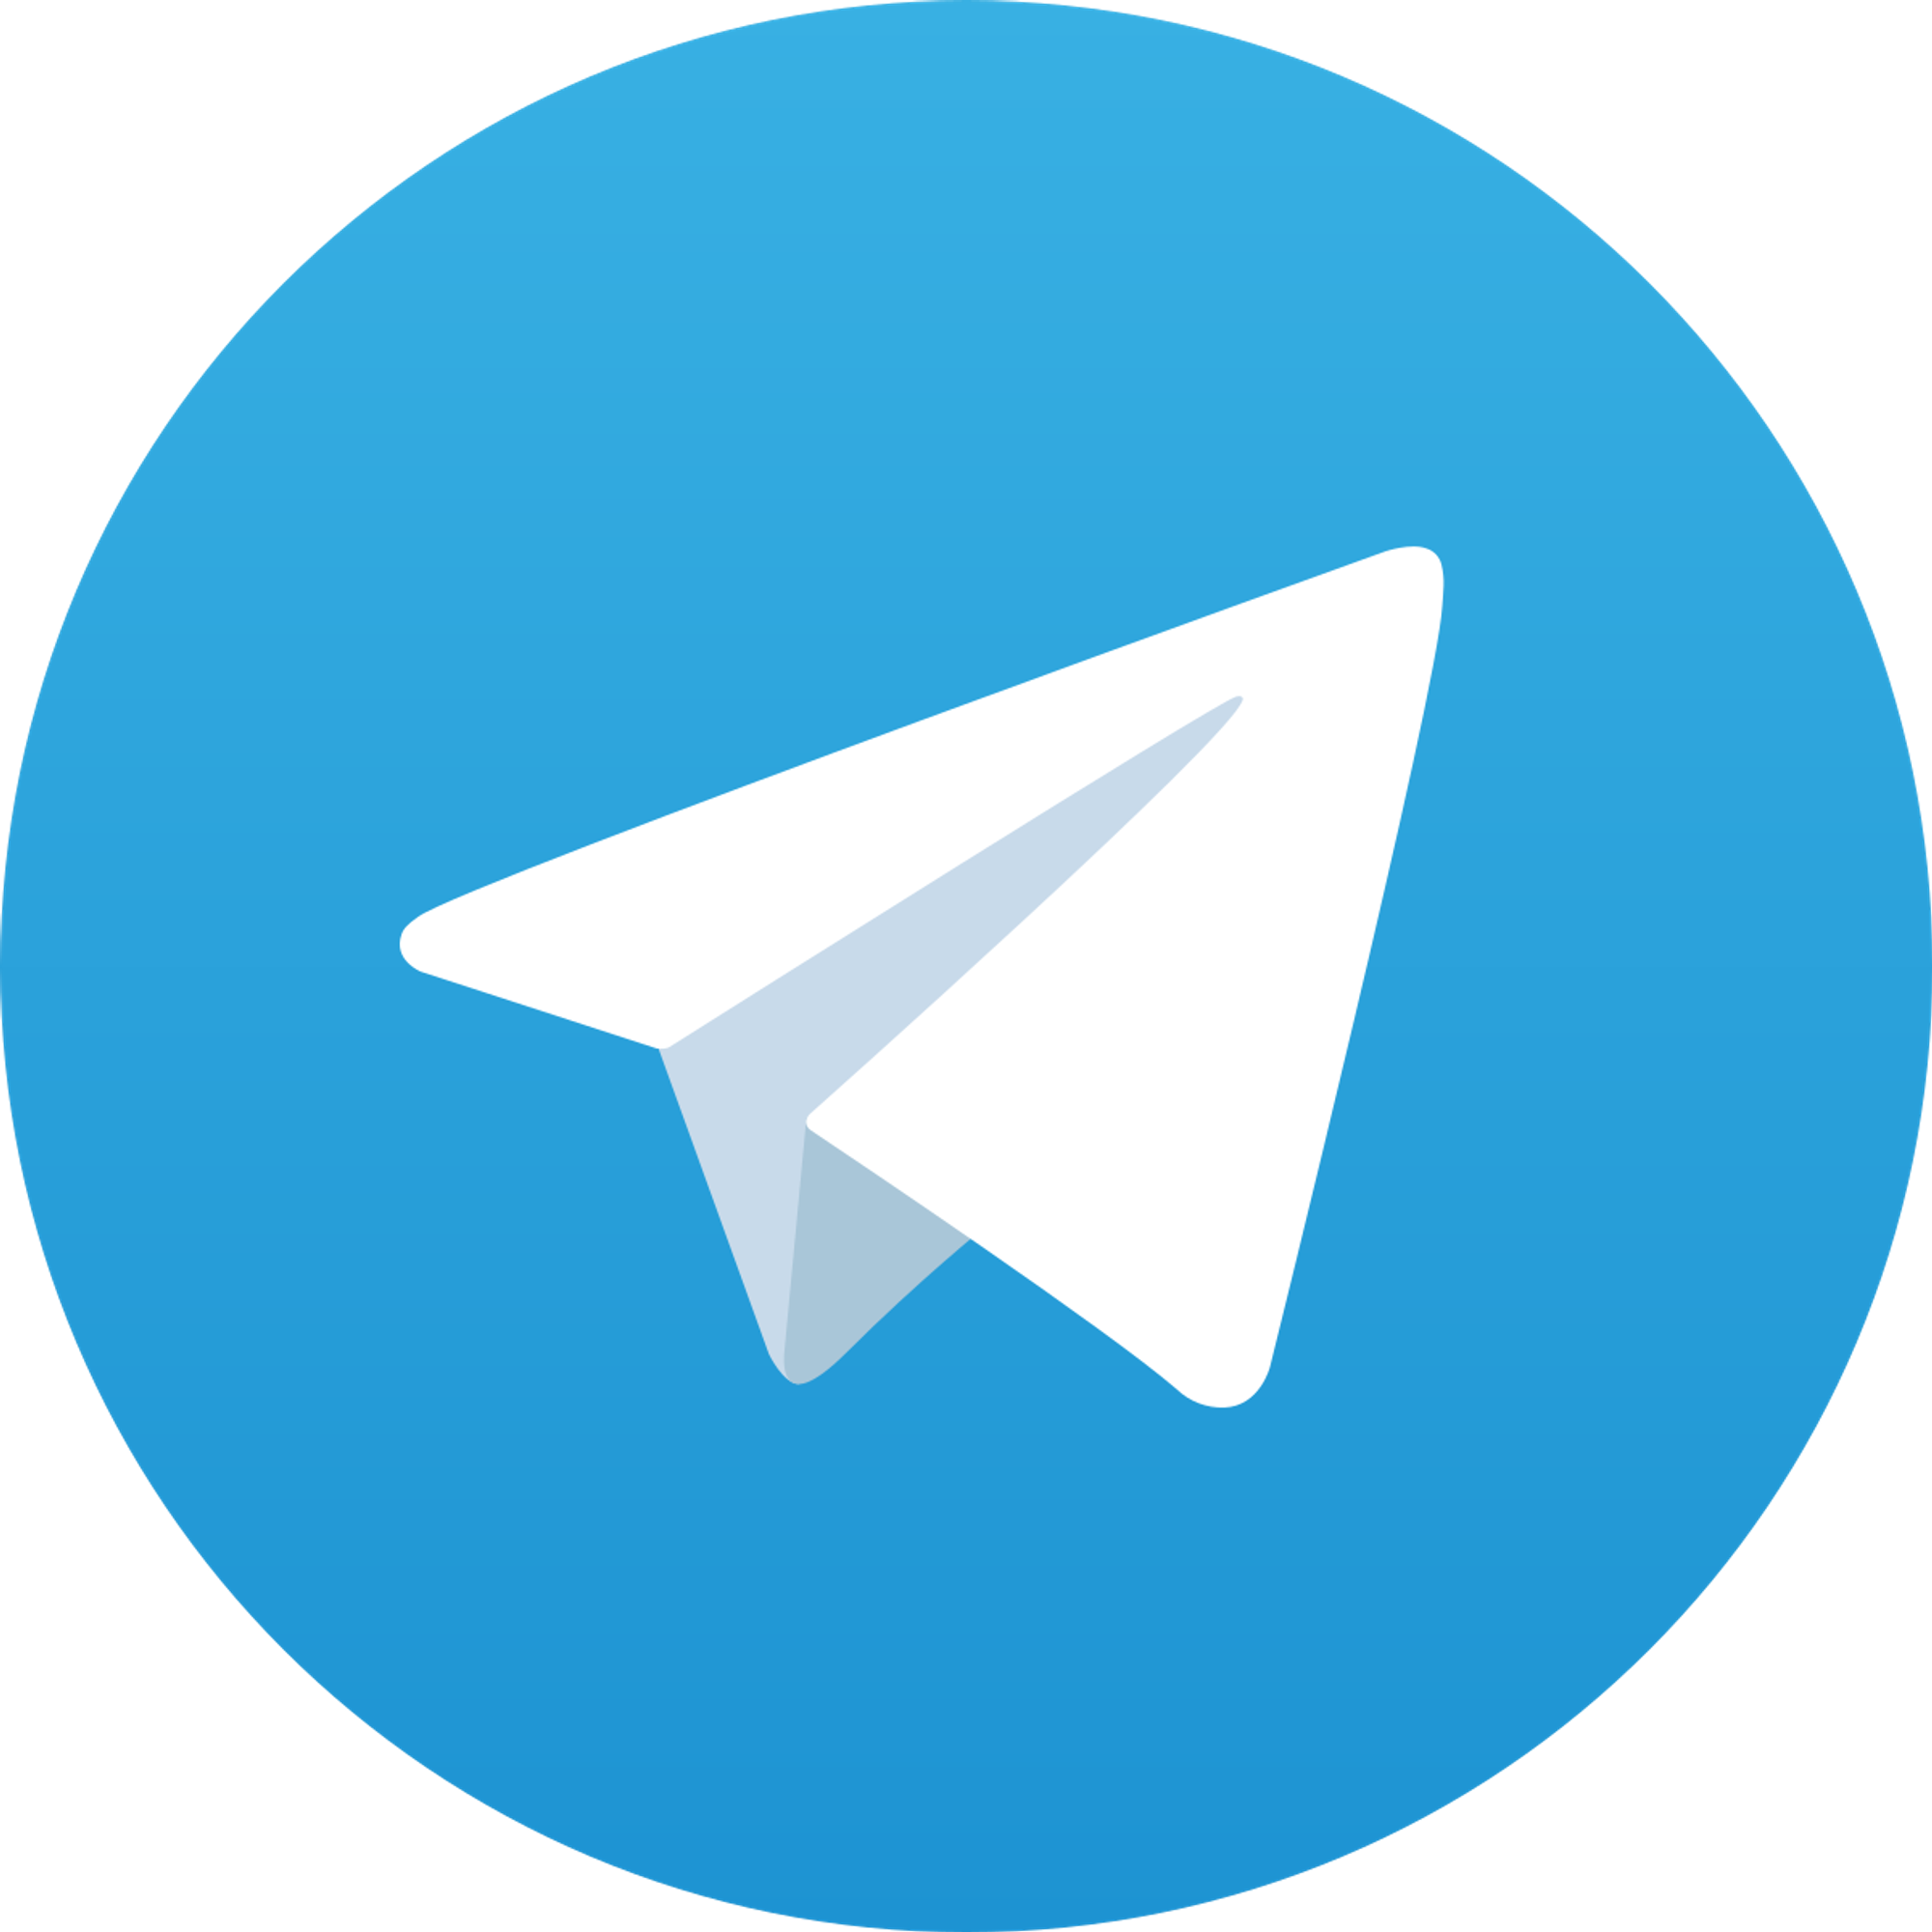 请加入我的Telegram群组，并私信我 “技术咨询” ； 我将尽快回复您